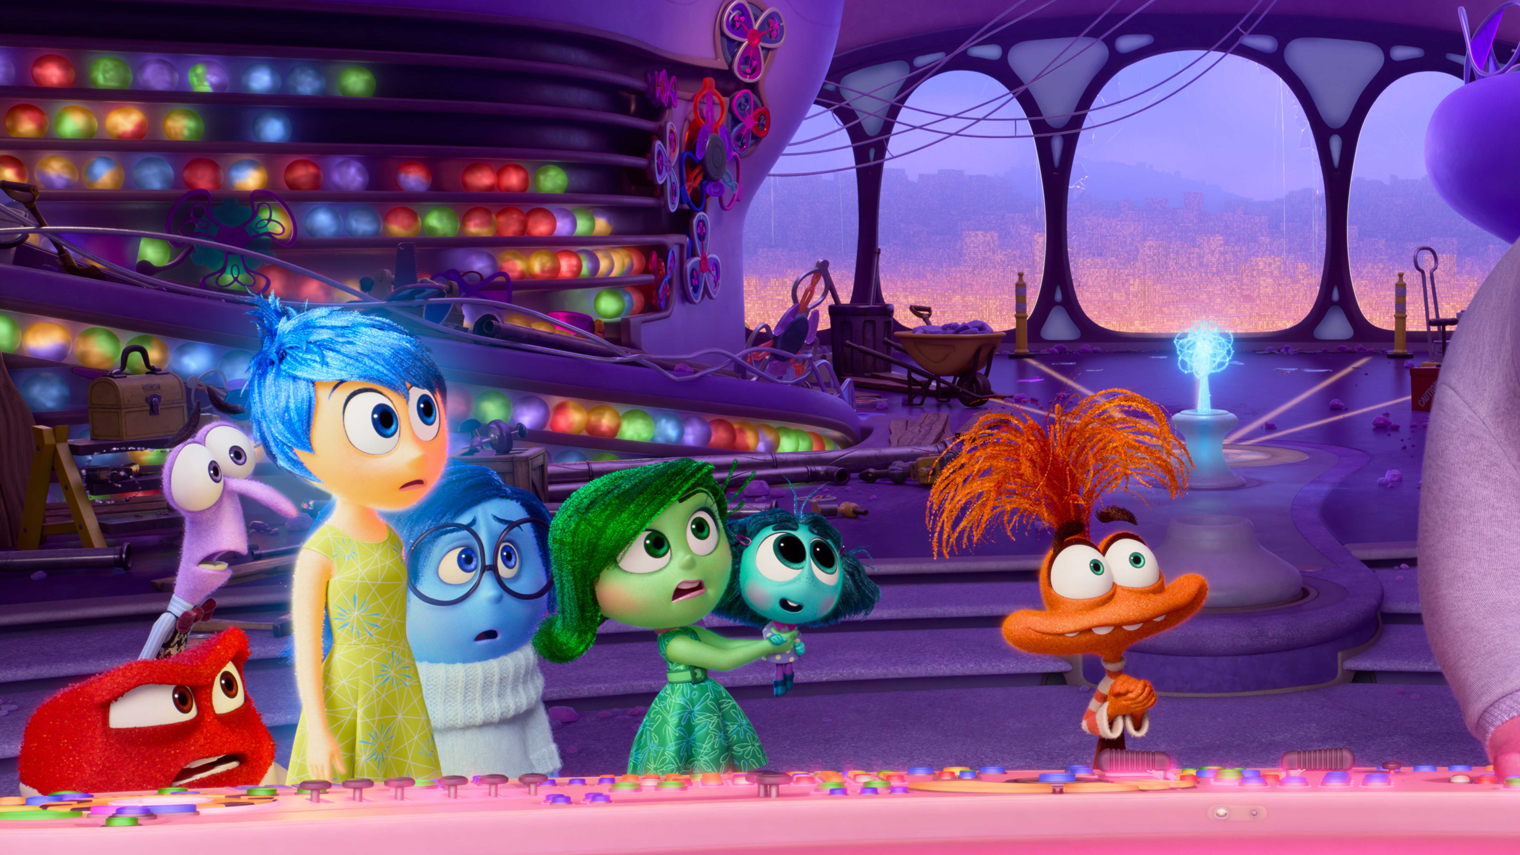 Автор оригинальной части и генеральный директор Pixar Пит Доктер передал работу над сиквелом давнему сотруднику студии — аниматору Келси Манну. Он выступил режиссером и сценаристом «Головоломки 2»